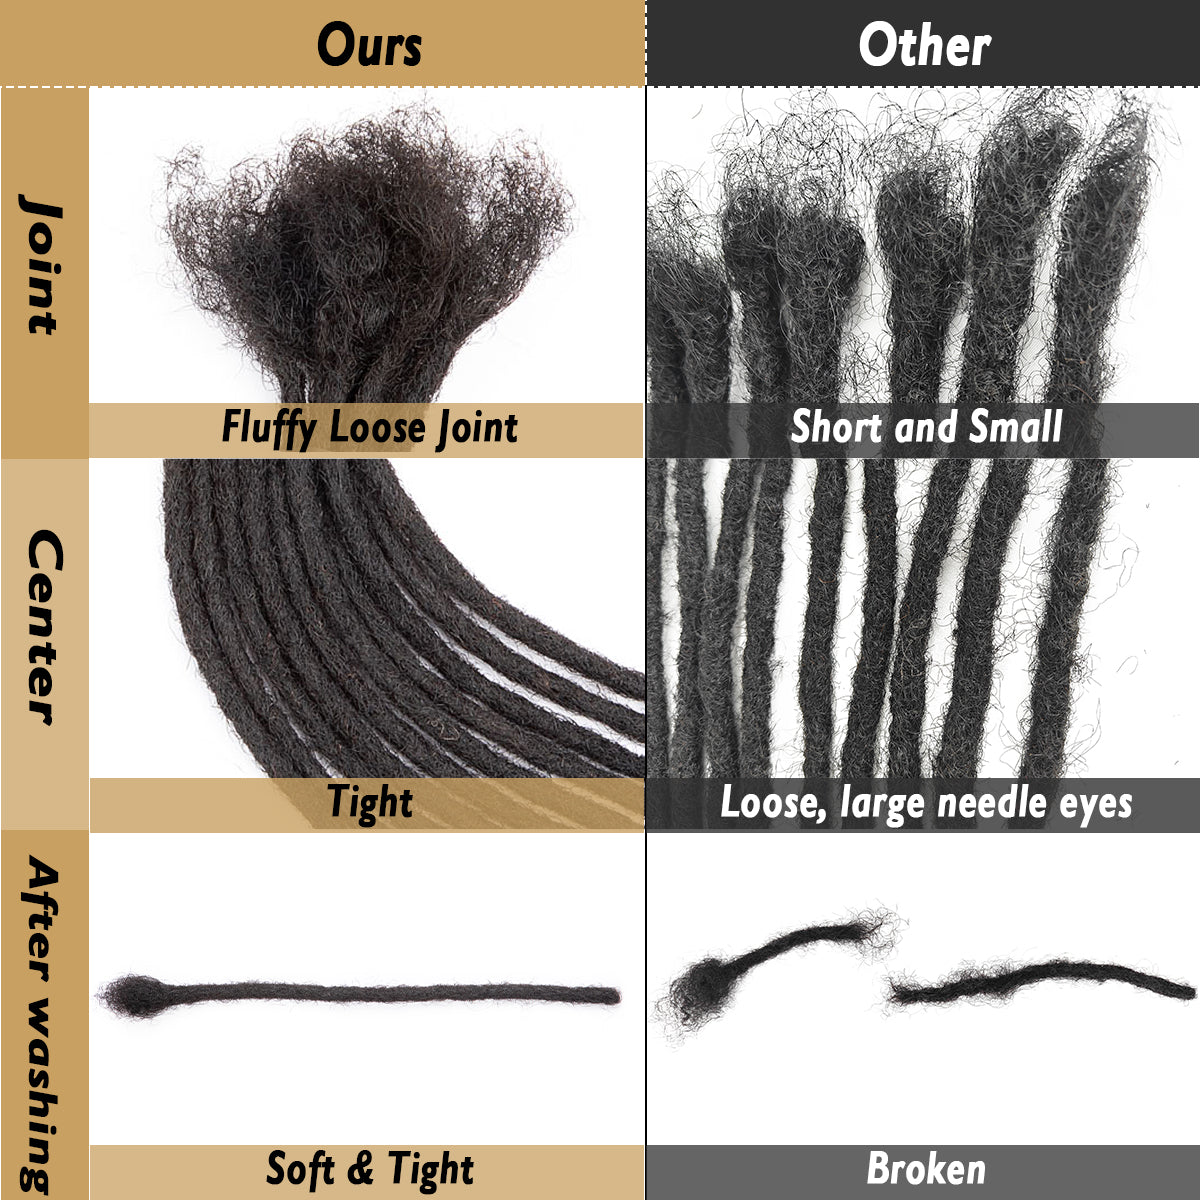 prolongements de cheveux de Locs de prolongements de dreadlocks de cheveux humains d'épaisseur de 0.2cm 6-18 pouces